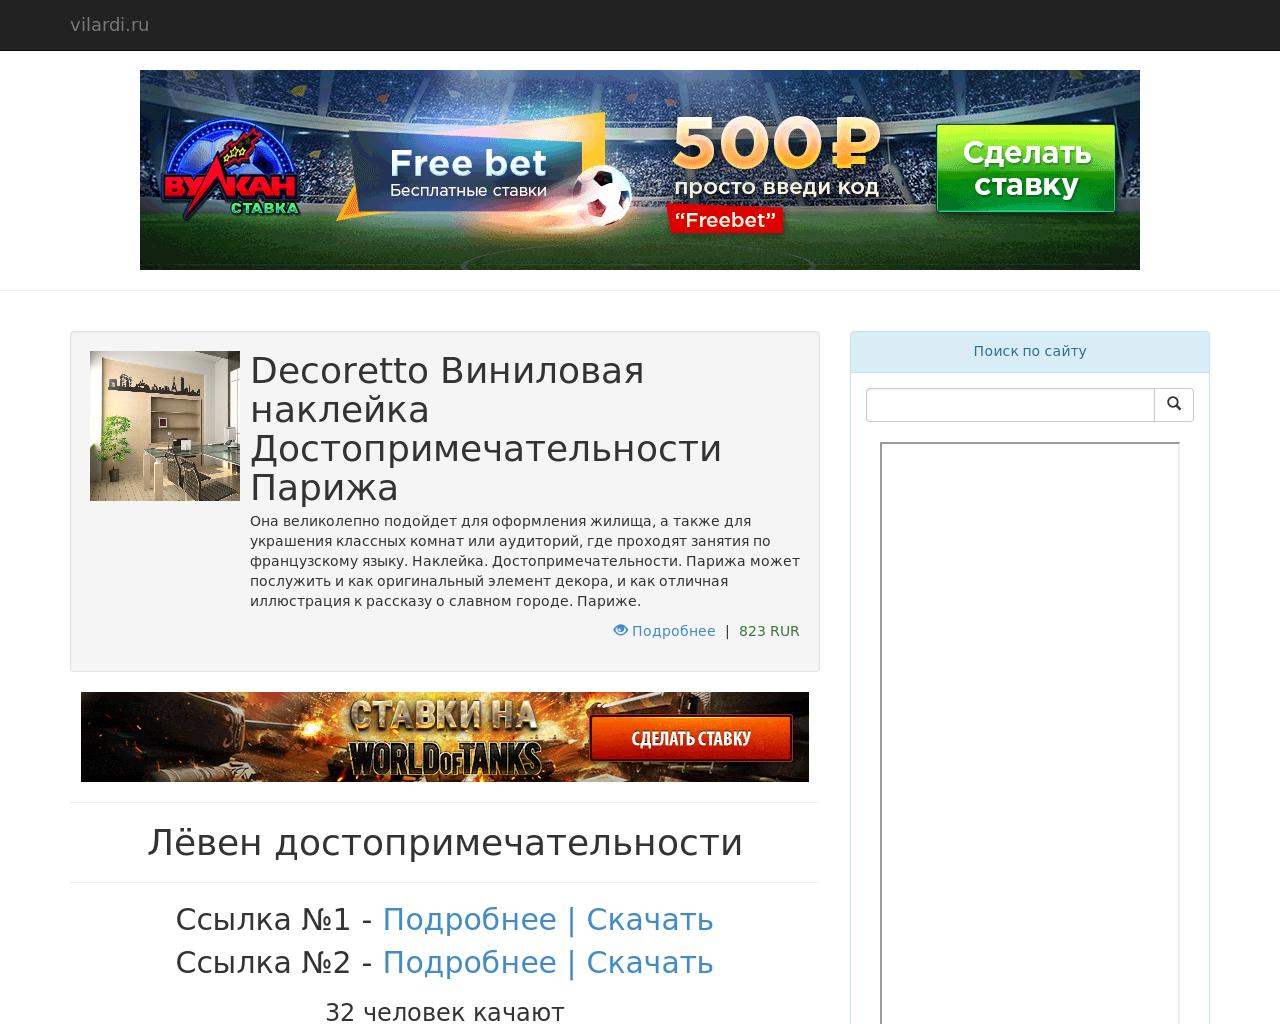 Изображение сайта vilardi.ru в разрешении 1280x1024